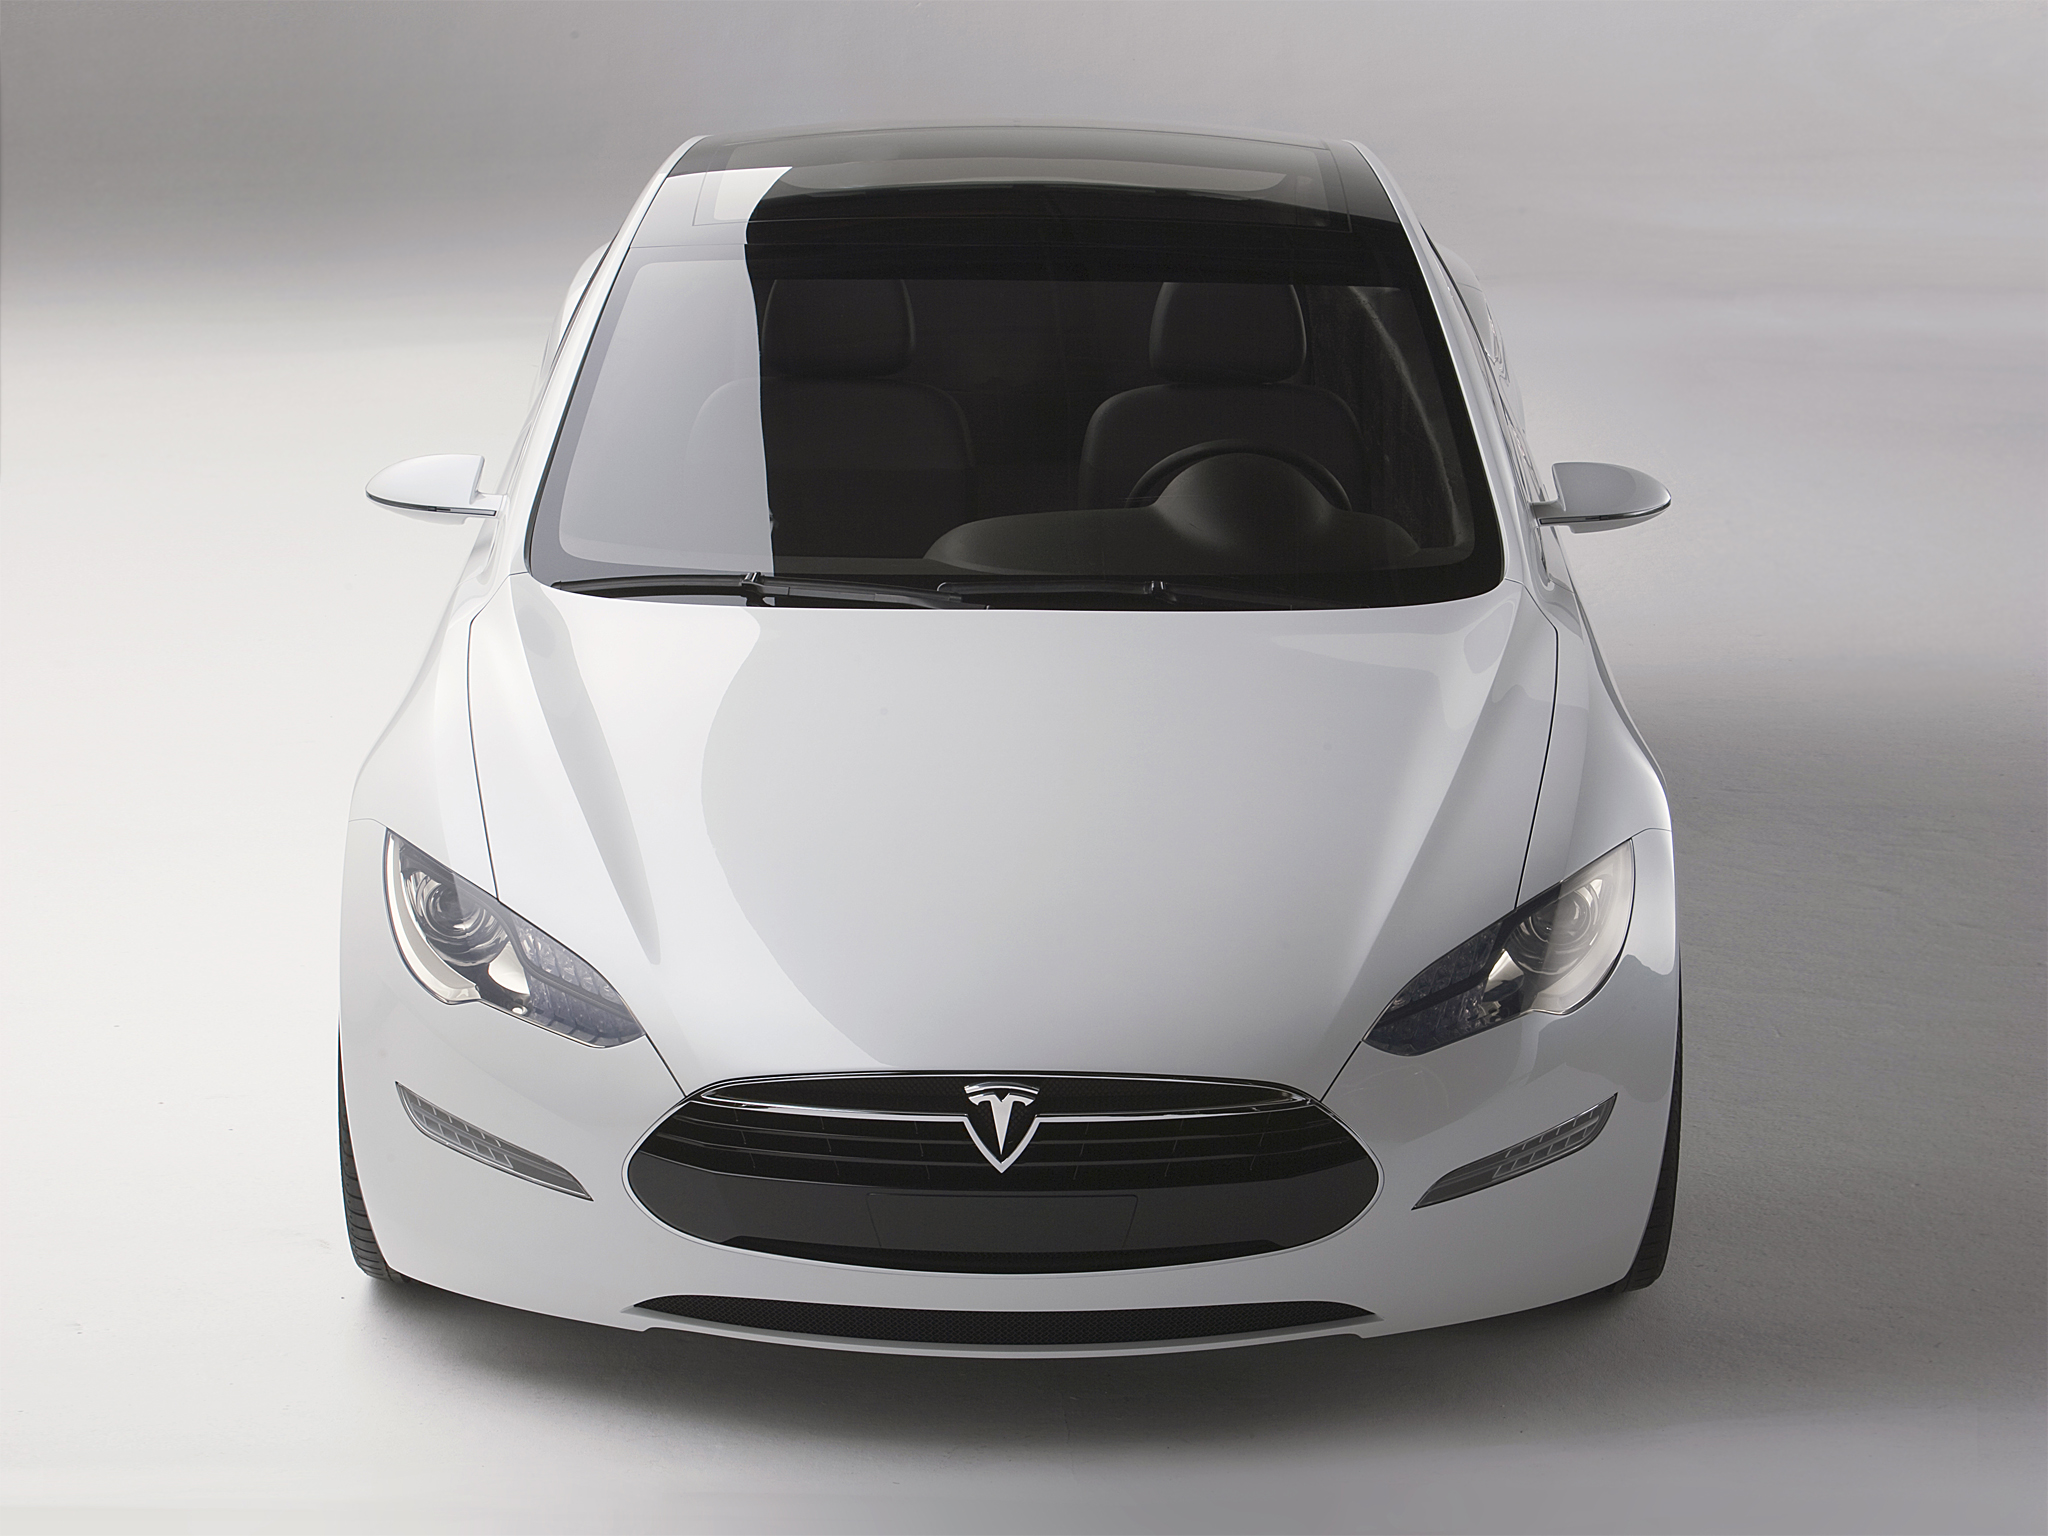 2009, Tesla, Model s, Concept, Supercar, Fs Wallpaper